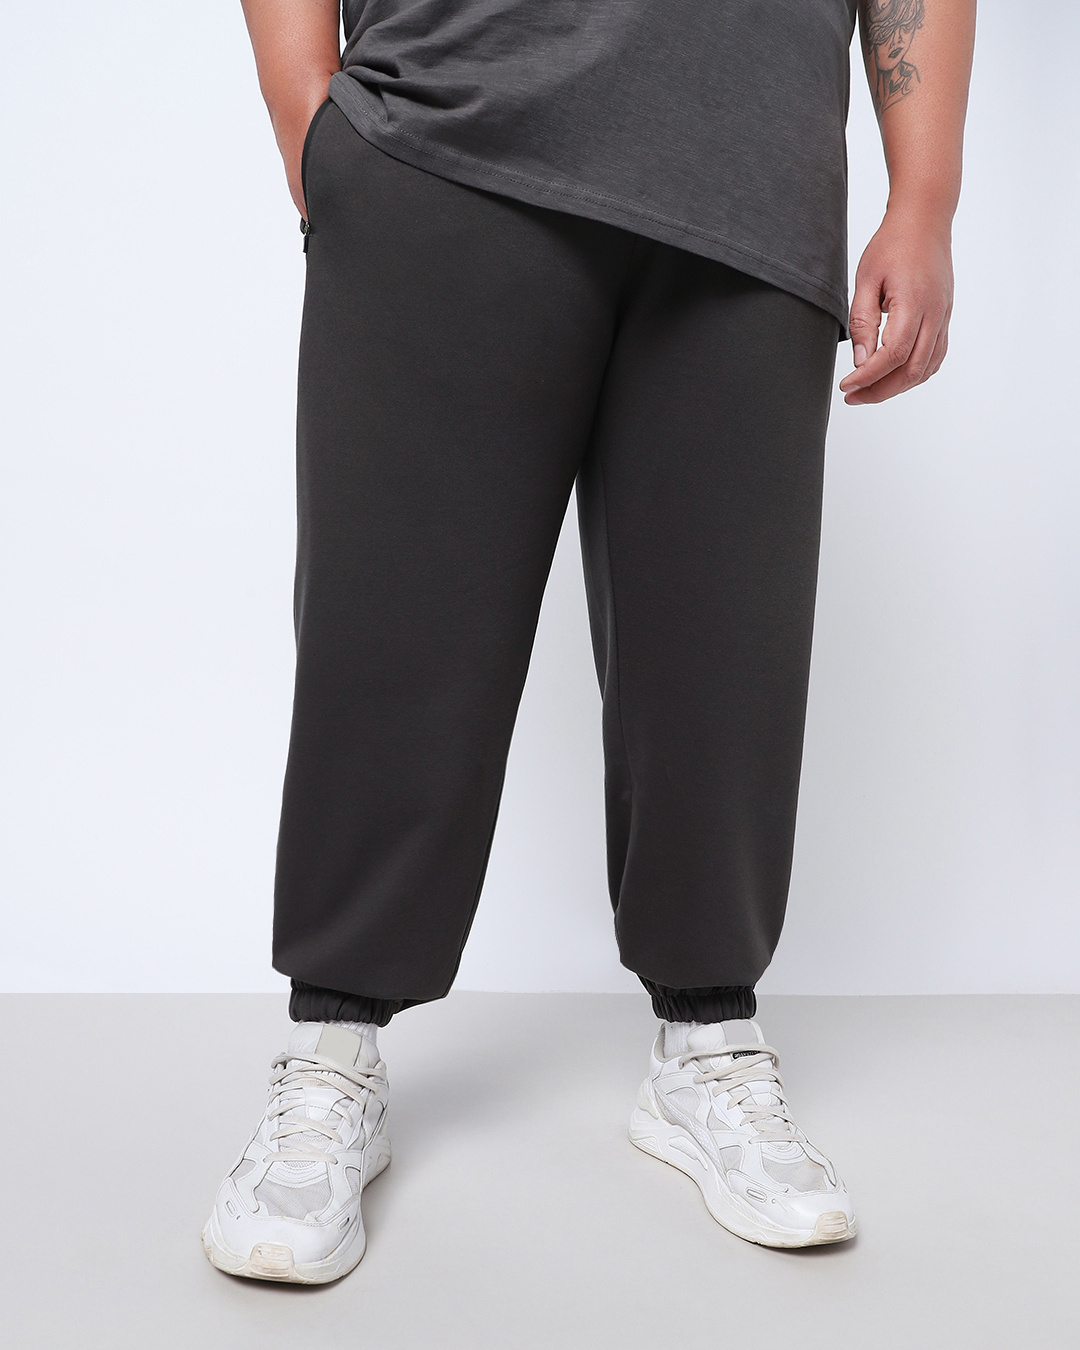 Buy Men's Grey Oversized Plus Size Joggers Online at Bewakoof